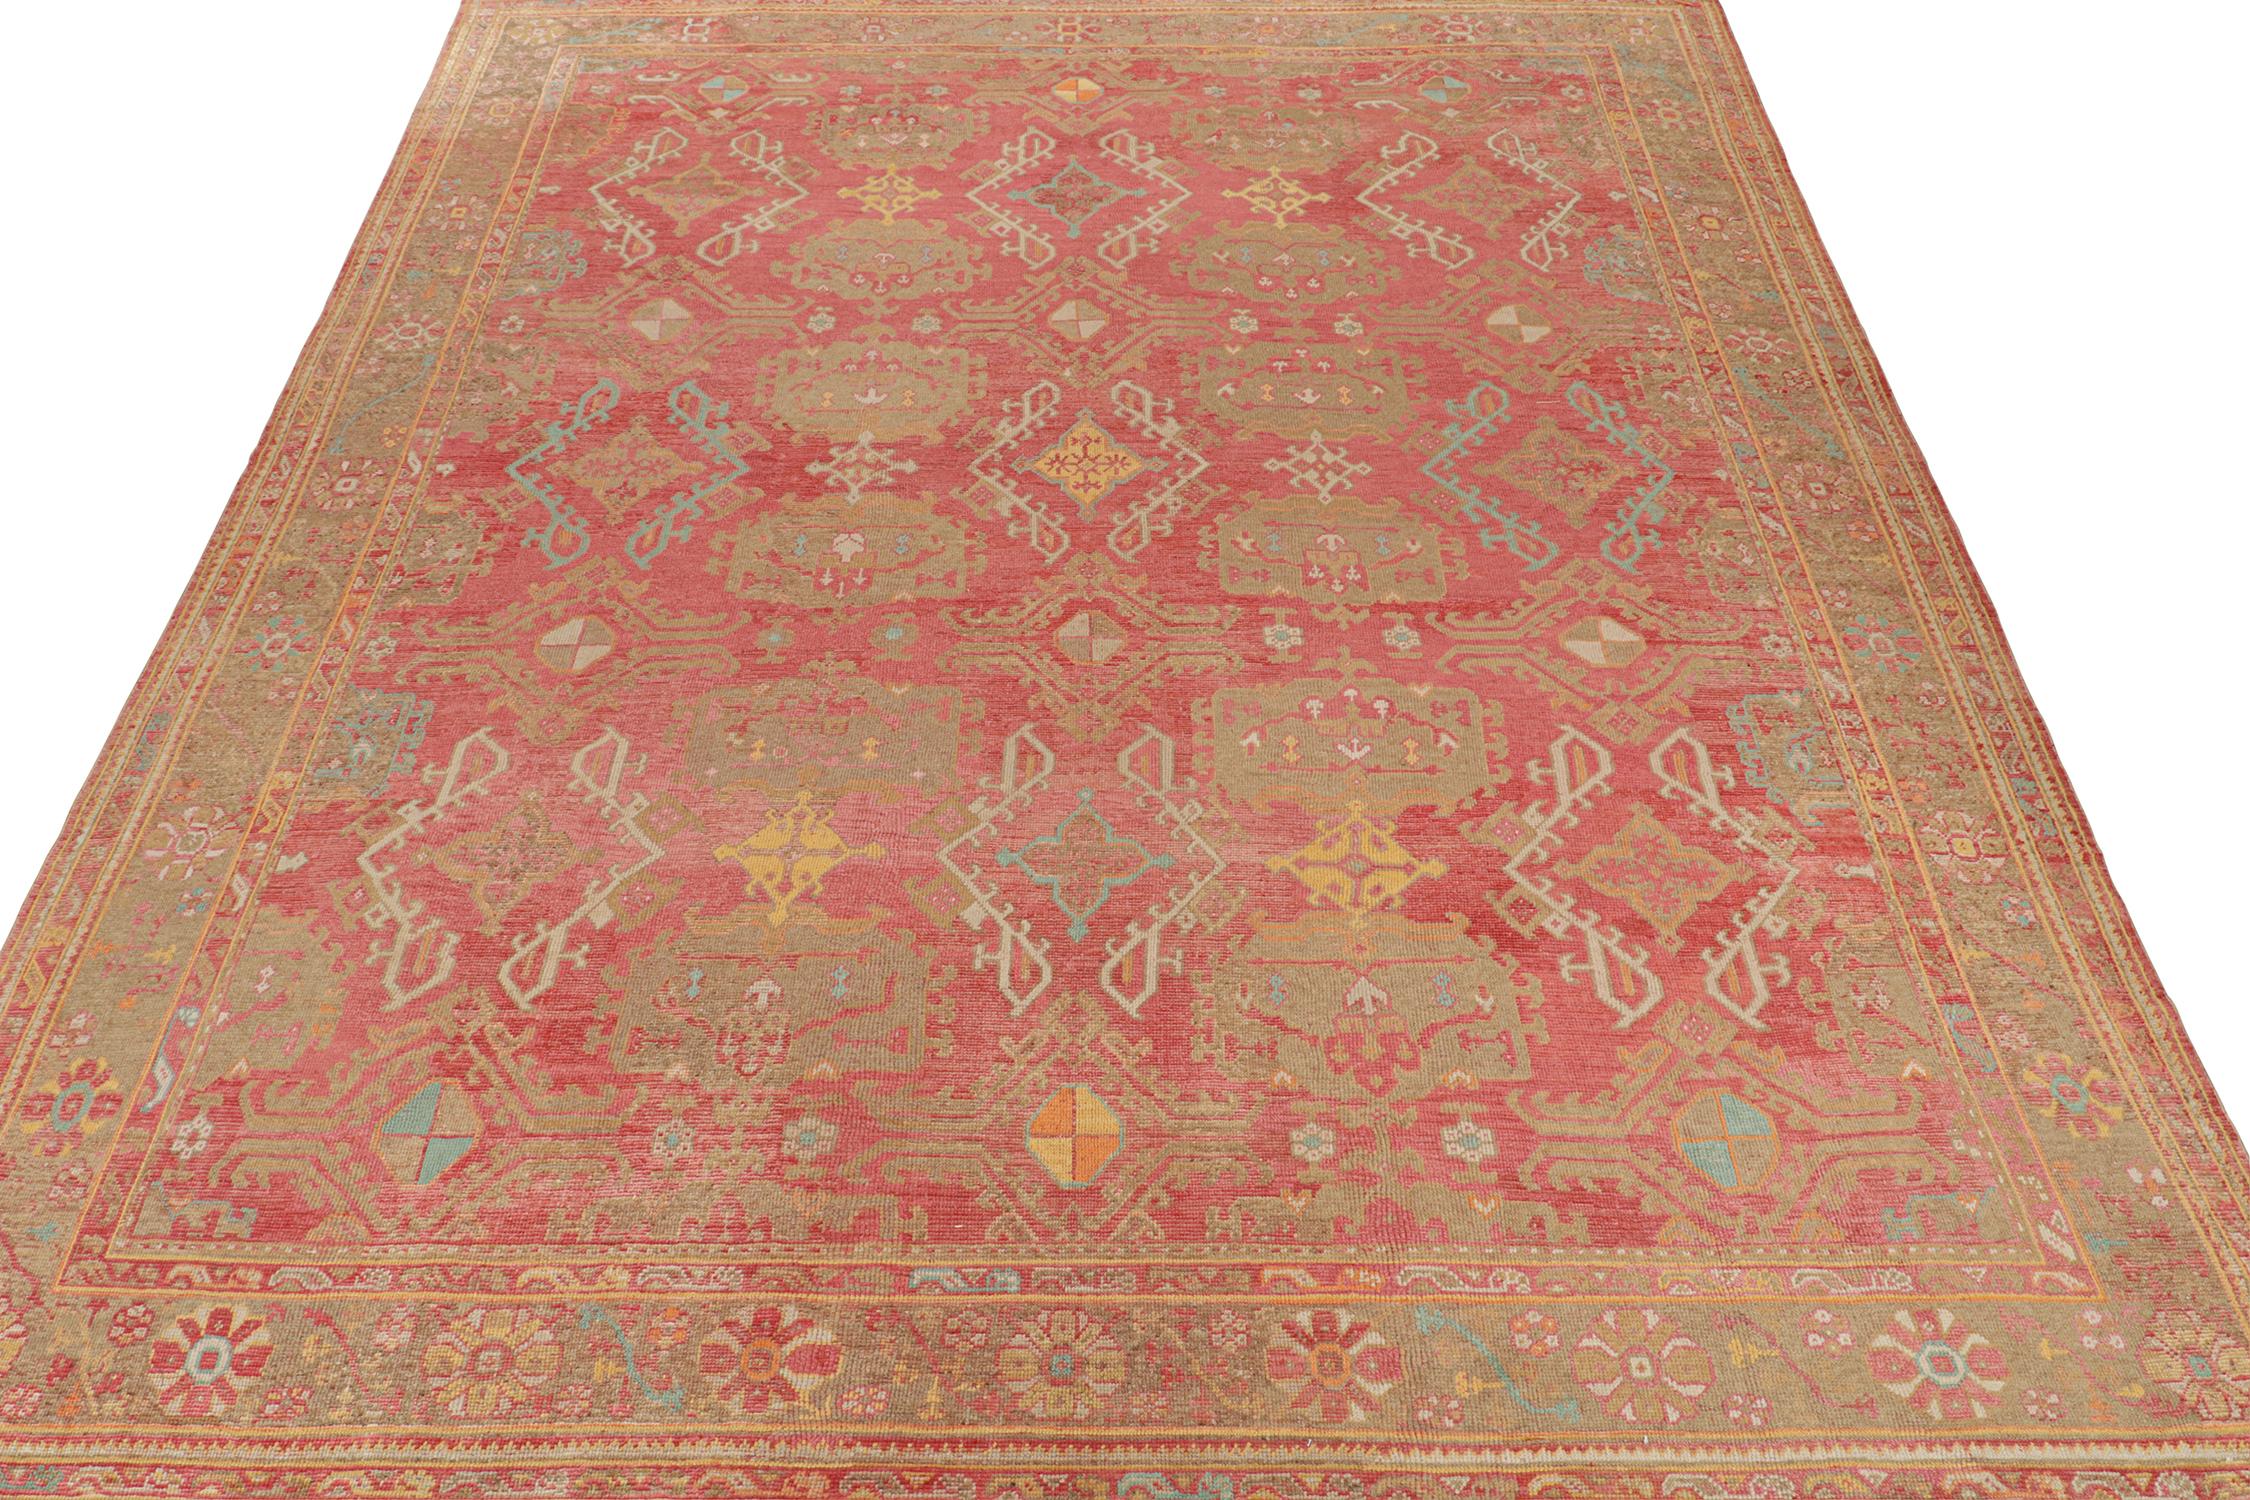 Dieser Teppich im Format 13x16 ist ein Neuzugang in der Modern Classics Collection'S von Rug & Kilim, die antike Oushak-Teppichdesigns wieder aufgreift. Handgeknüpft aus Wolle, spielt es mit warmen Farbtönen in geometrischen Stammesmustern mit